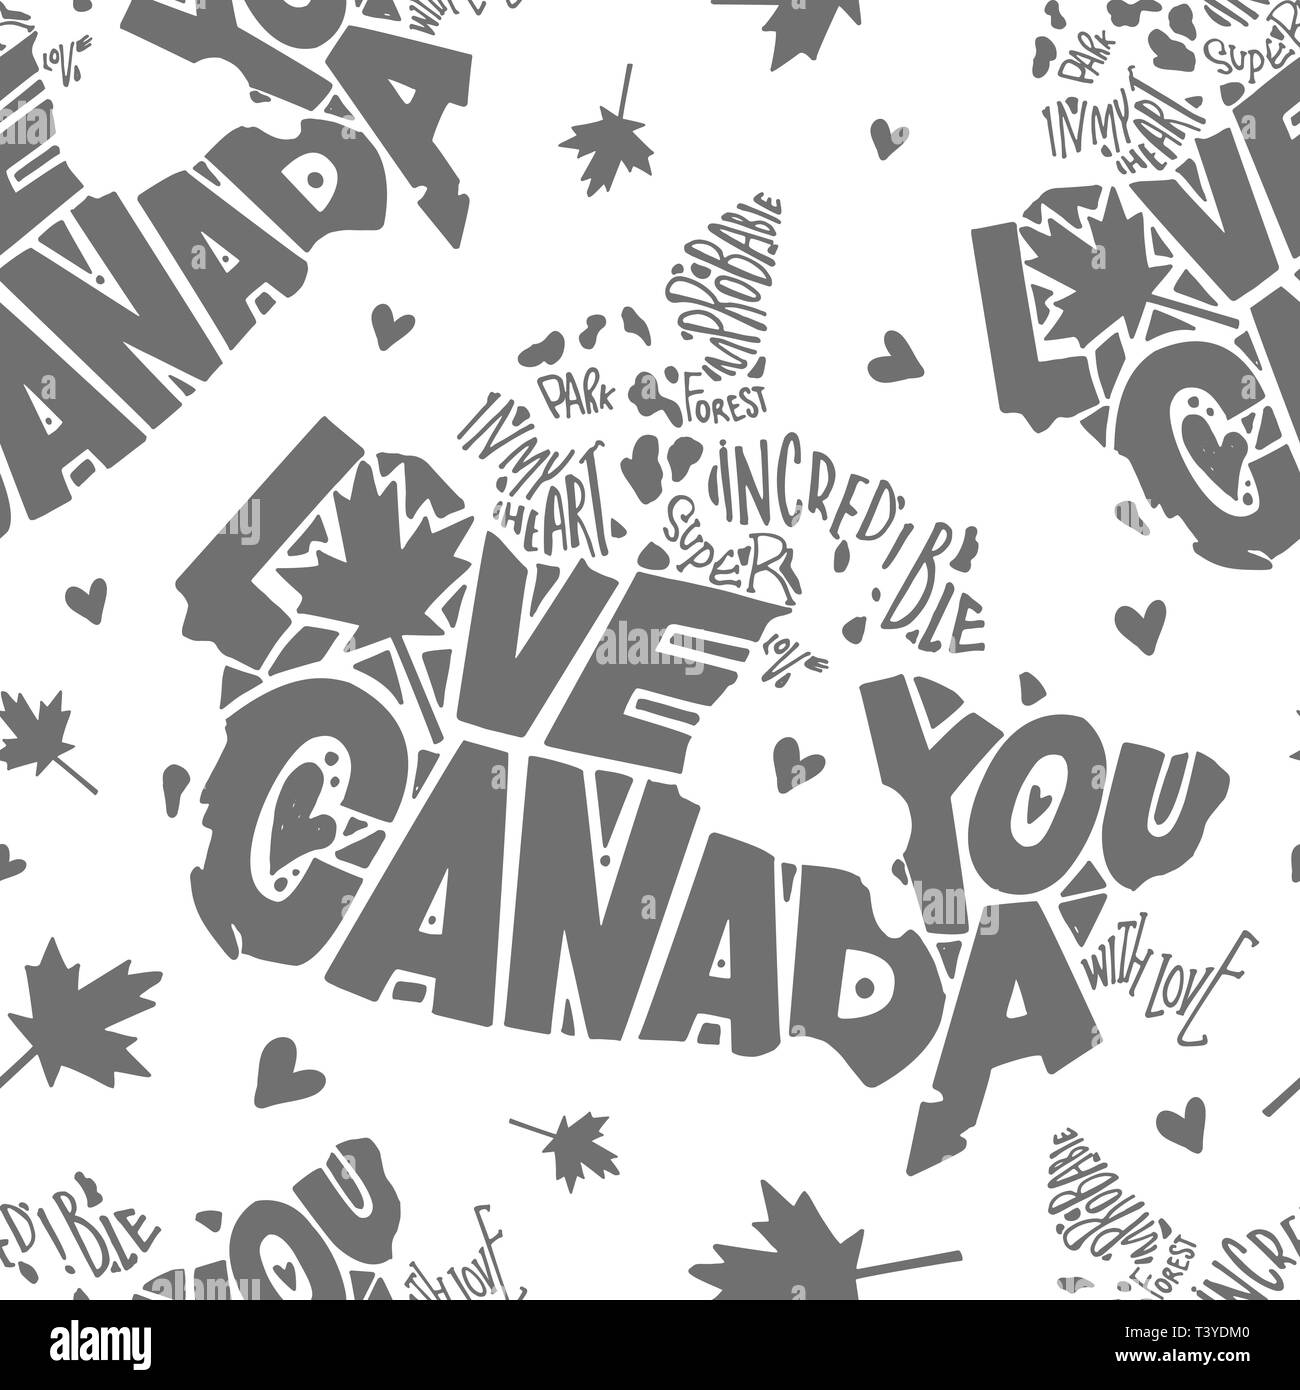 Tag der Unabhängigkeit von Kanada Muster. Liebe dich, Kanada. Von Hand bemalt. Worte sind in der Silhouette des Landes Kanada eingeschrieben. Grau auf Weiß backgrou Stock Vektor